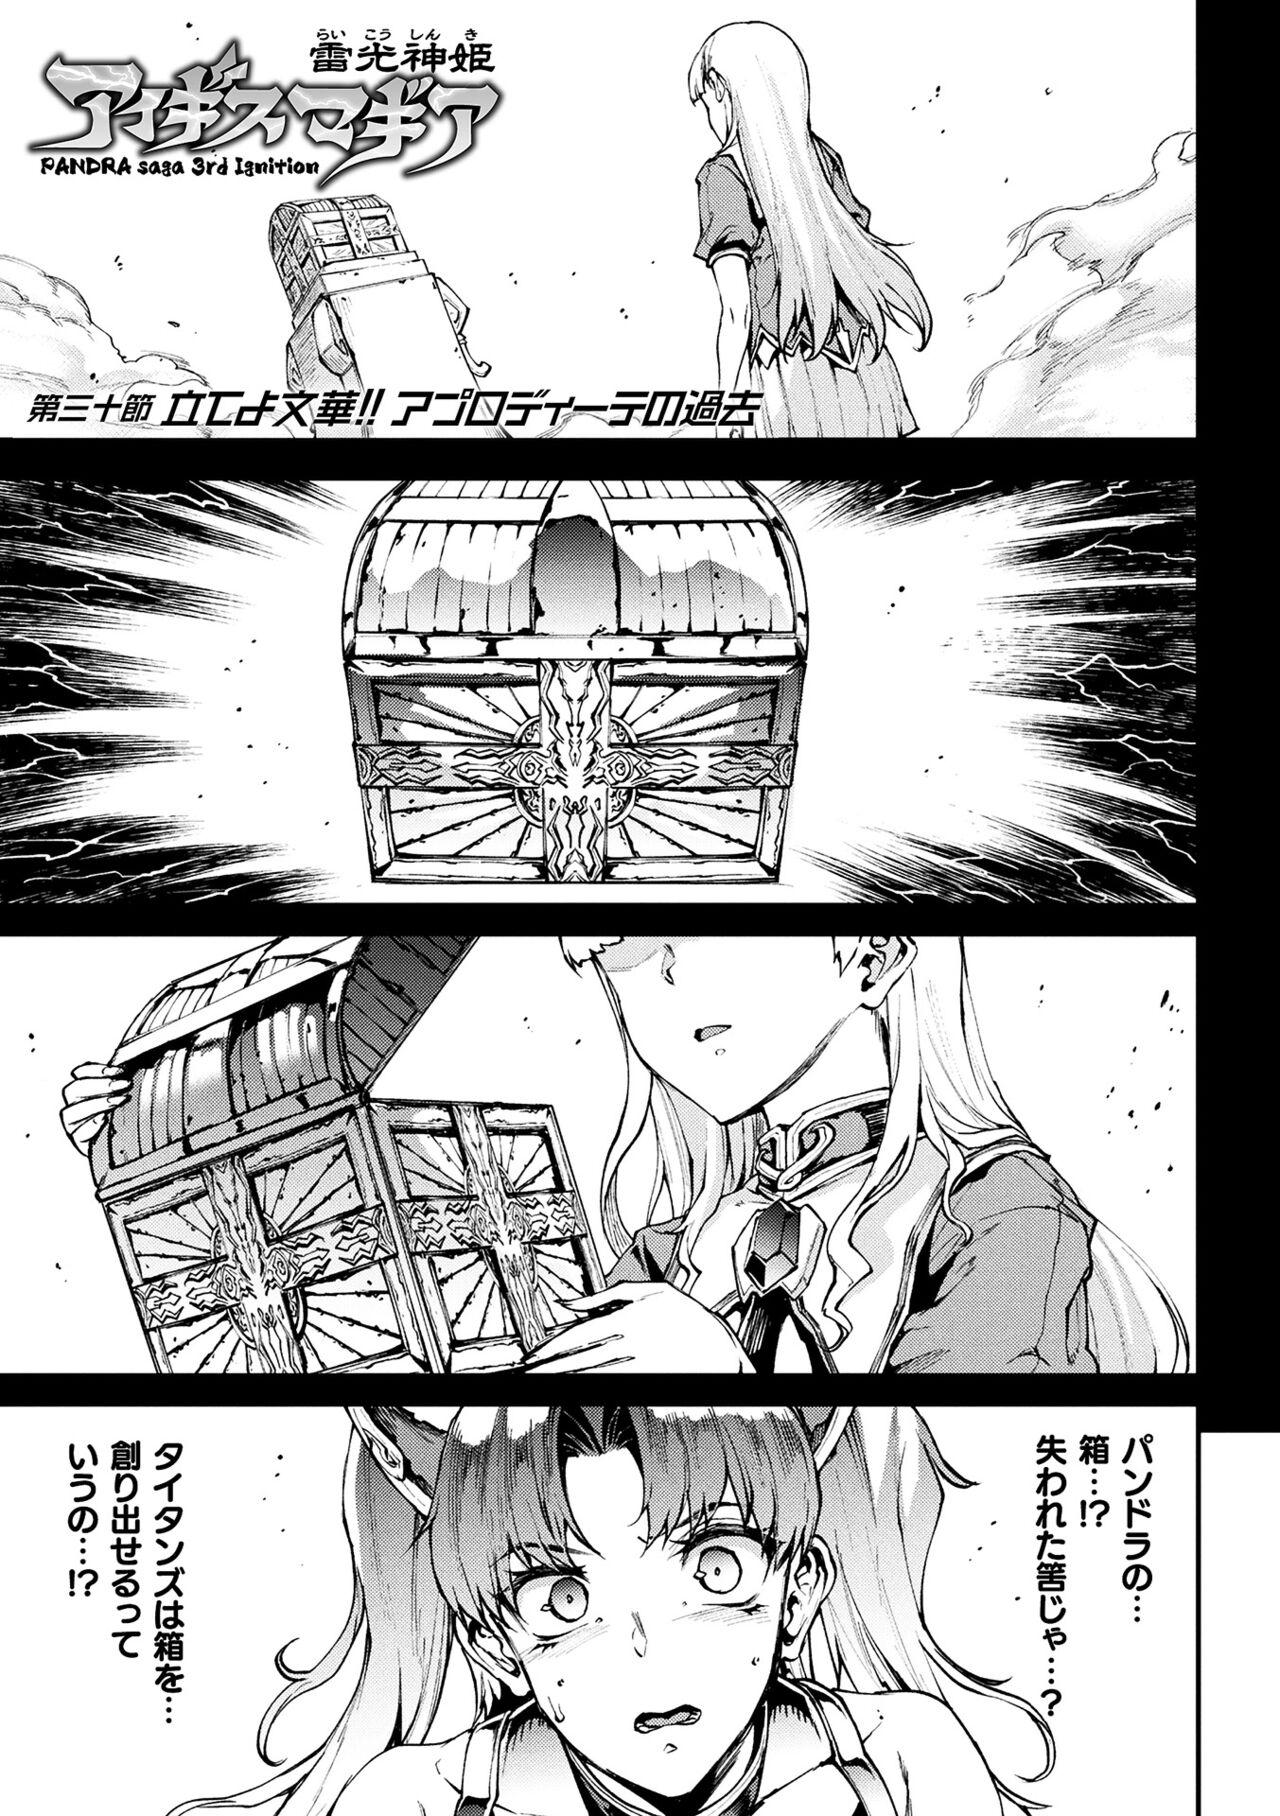 [Erect Sawaru] Raikou Shinki Igis Magia III -PANDRA saga 3rd ignition- 4 [Digital] 100